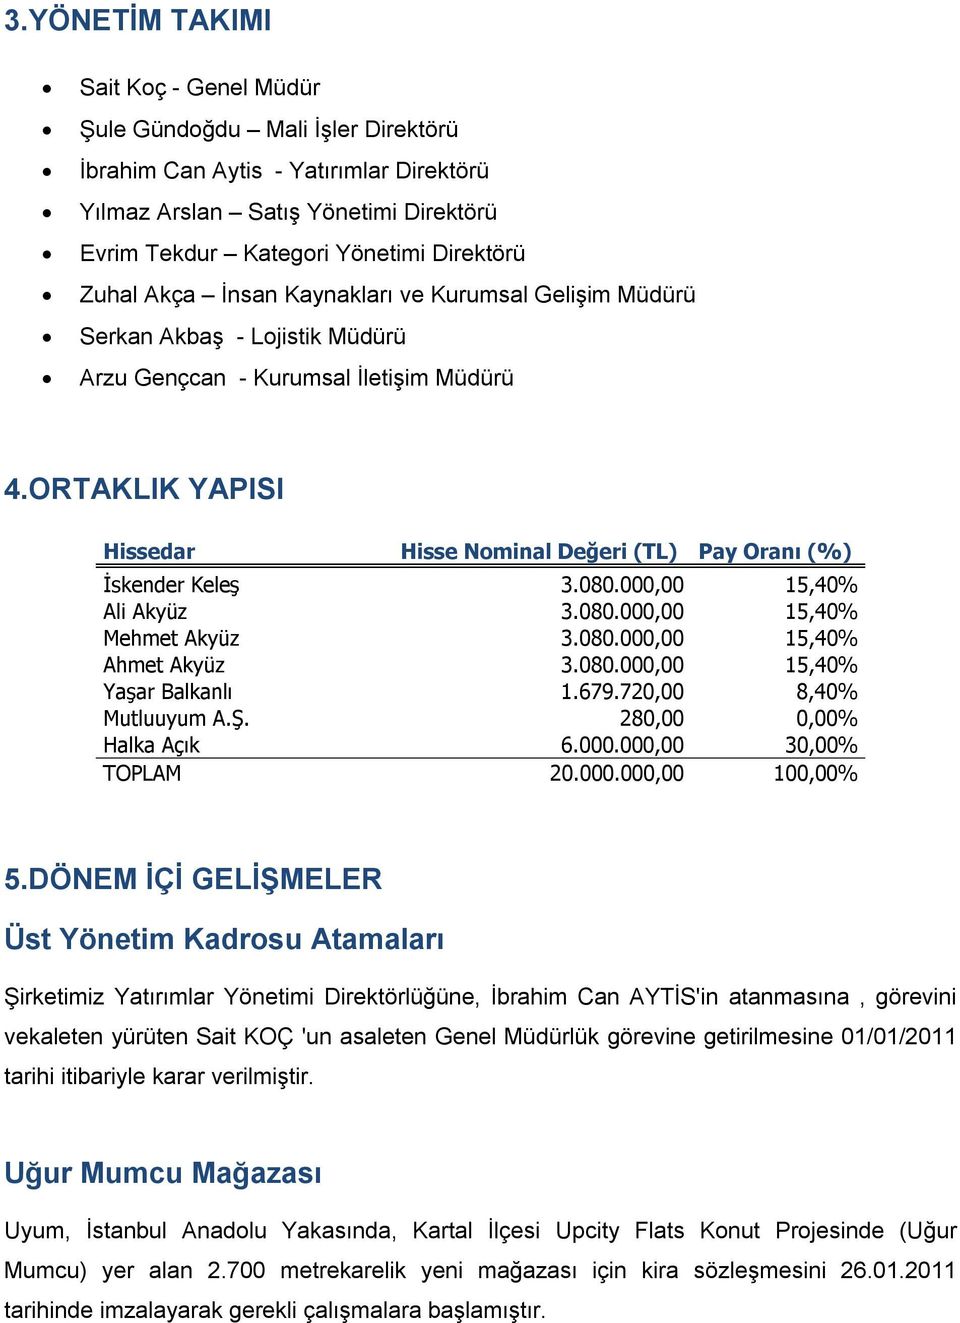 ORTAKLIK YAPISI Hissedar Hisse Nominal Değeri (TL) Pay Oranı (%) İskender Keleş 3.080.000,00 15,40% Ali Akyüz 3.080.000,00 15,40% Mehmet Akyüz 3.080.000,00 15,40% Ahmet Akyüz 3.080.000,00 15,40% Yaşar Balkanlı 1.